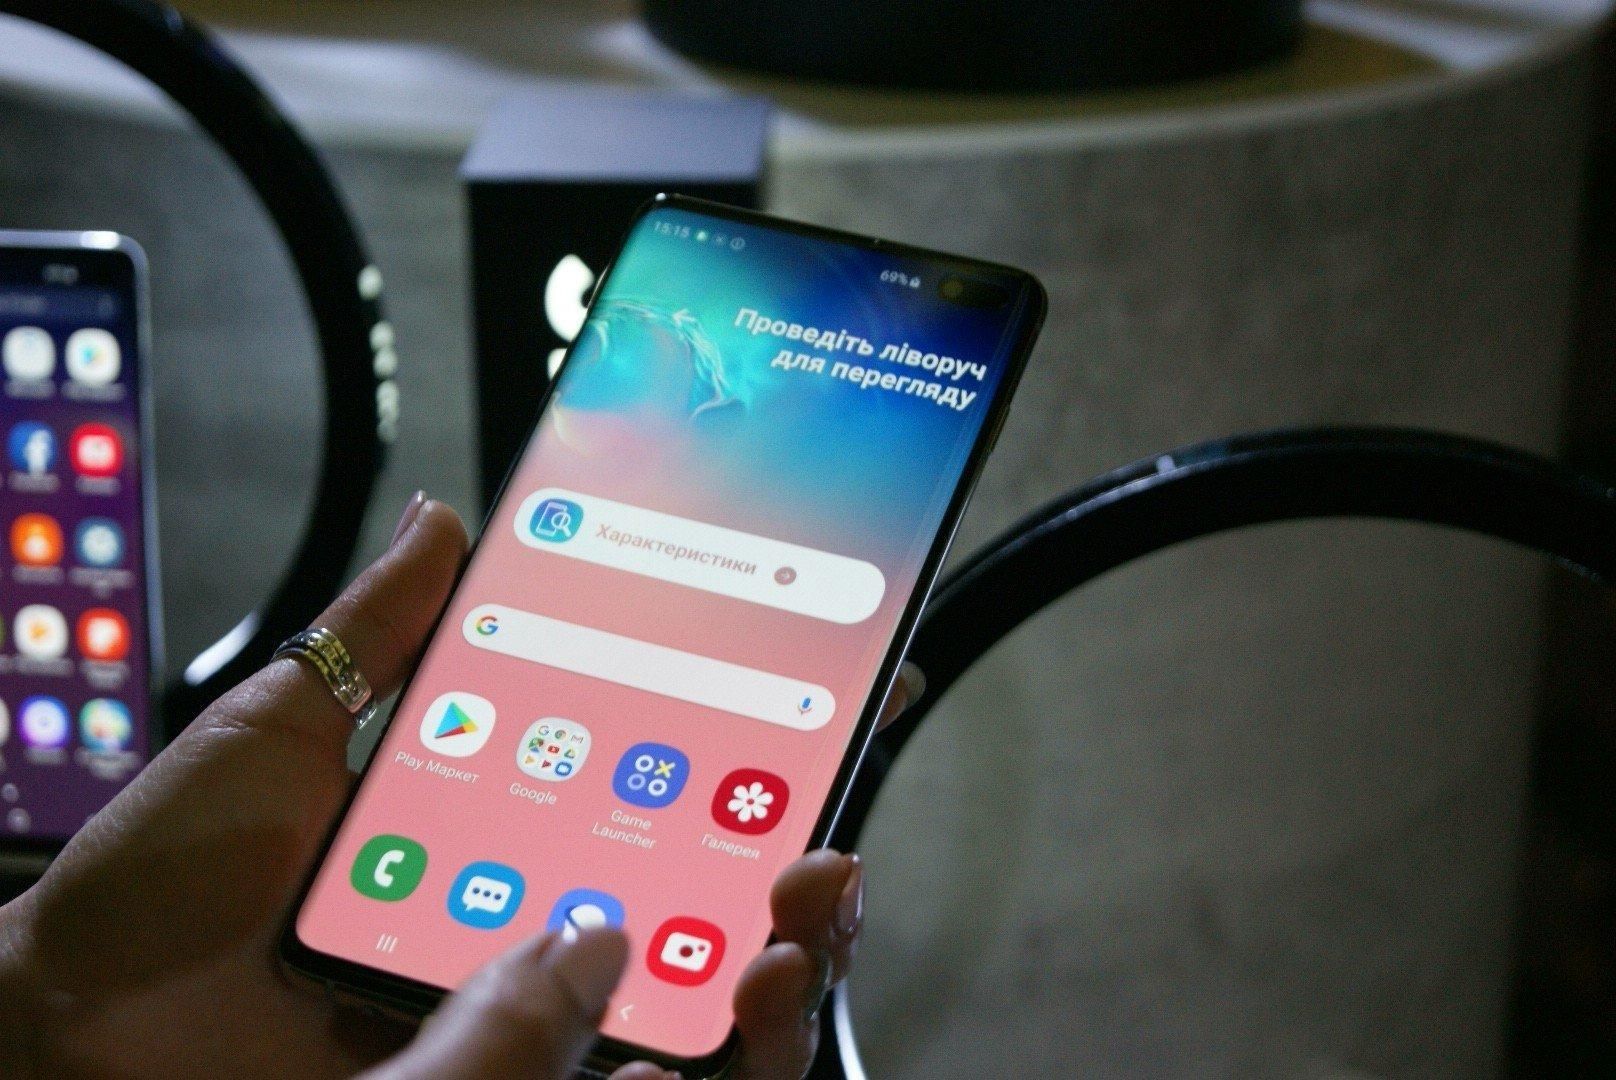 Уникальный сканер отпечатка пальцев в Samsung Galaxy S10 легко обманули